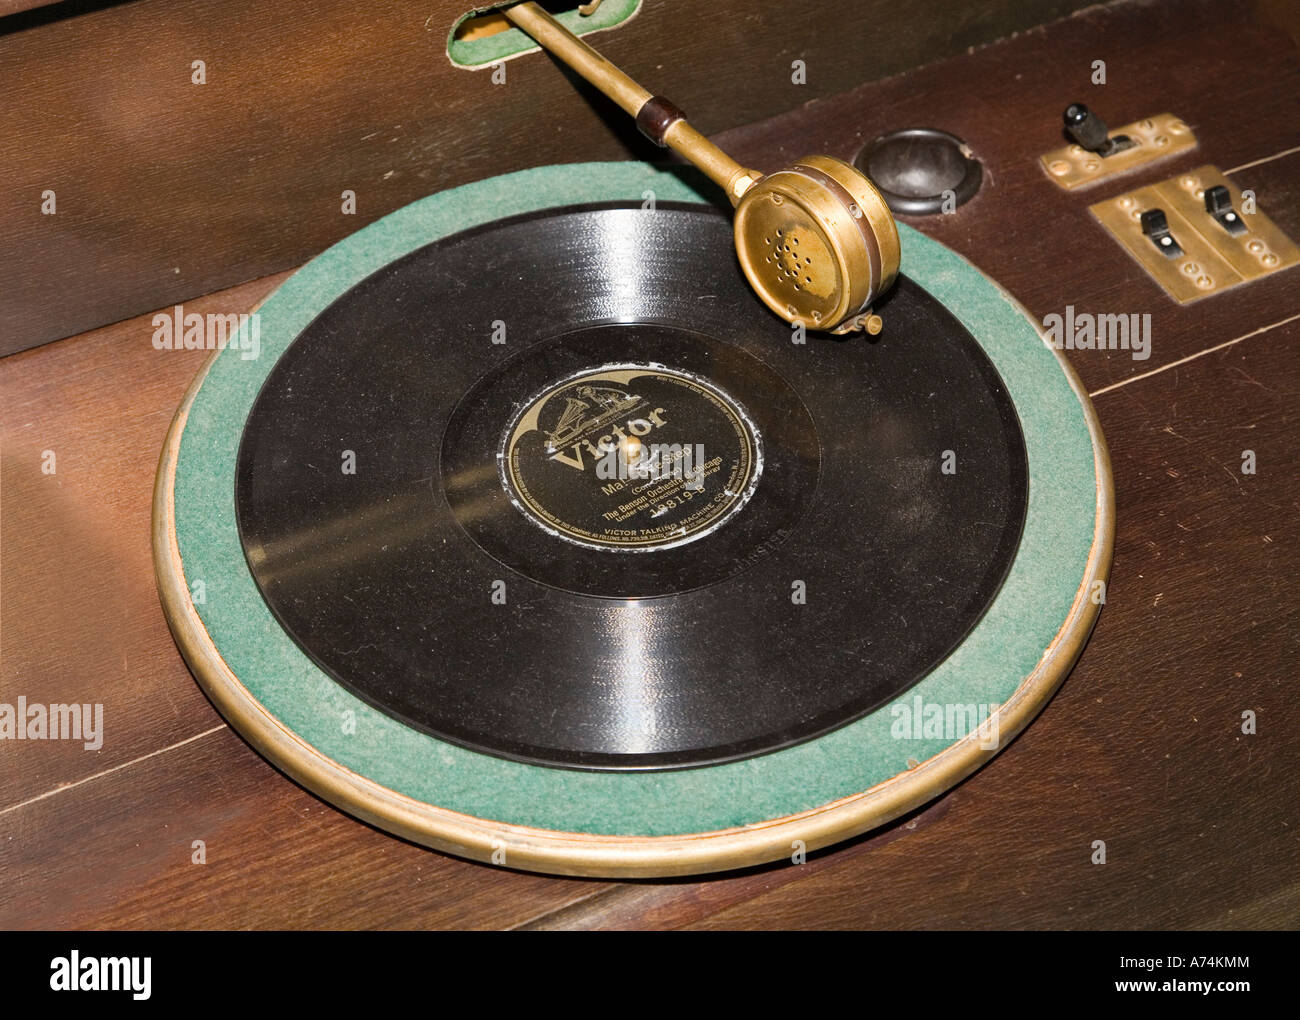 Antike 78 u/min Gramaphone Geschwindigkeitsrekord auf Drehtisch Stockfoto